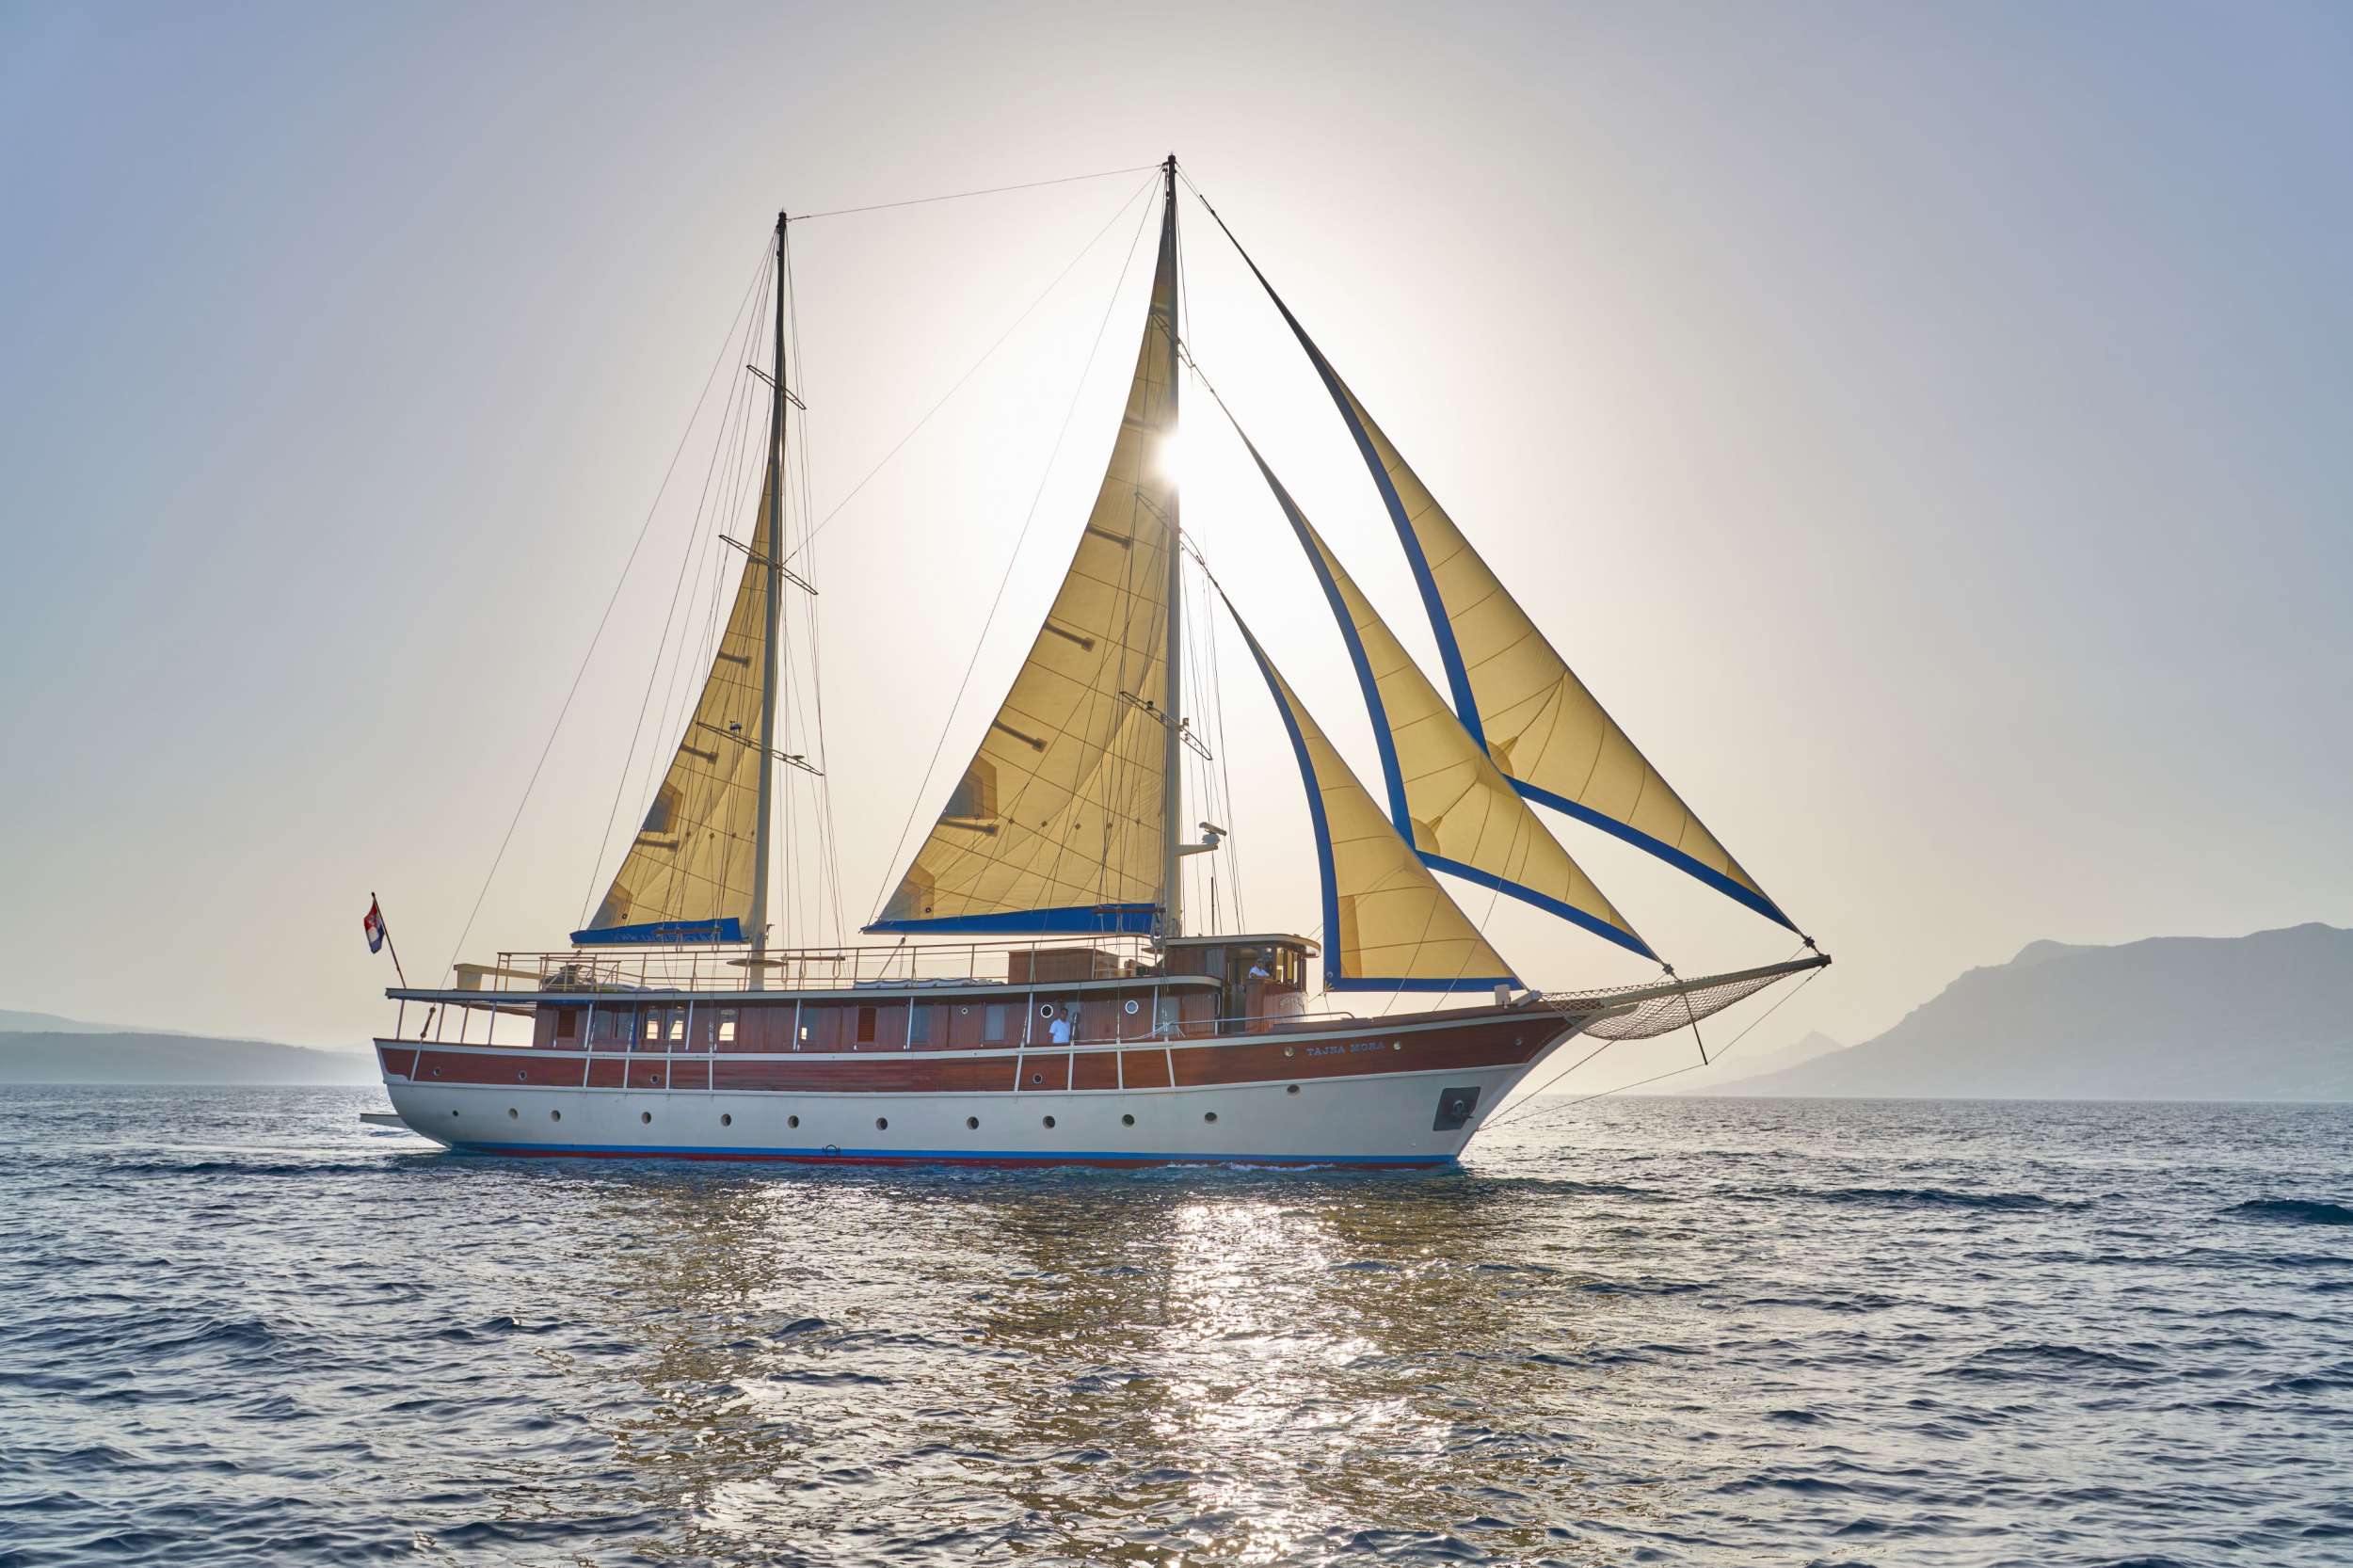 TAJNA MORA Yacht Charter - Ritzy Charters